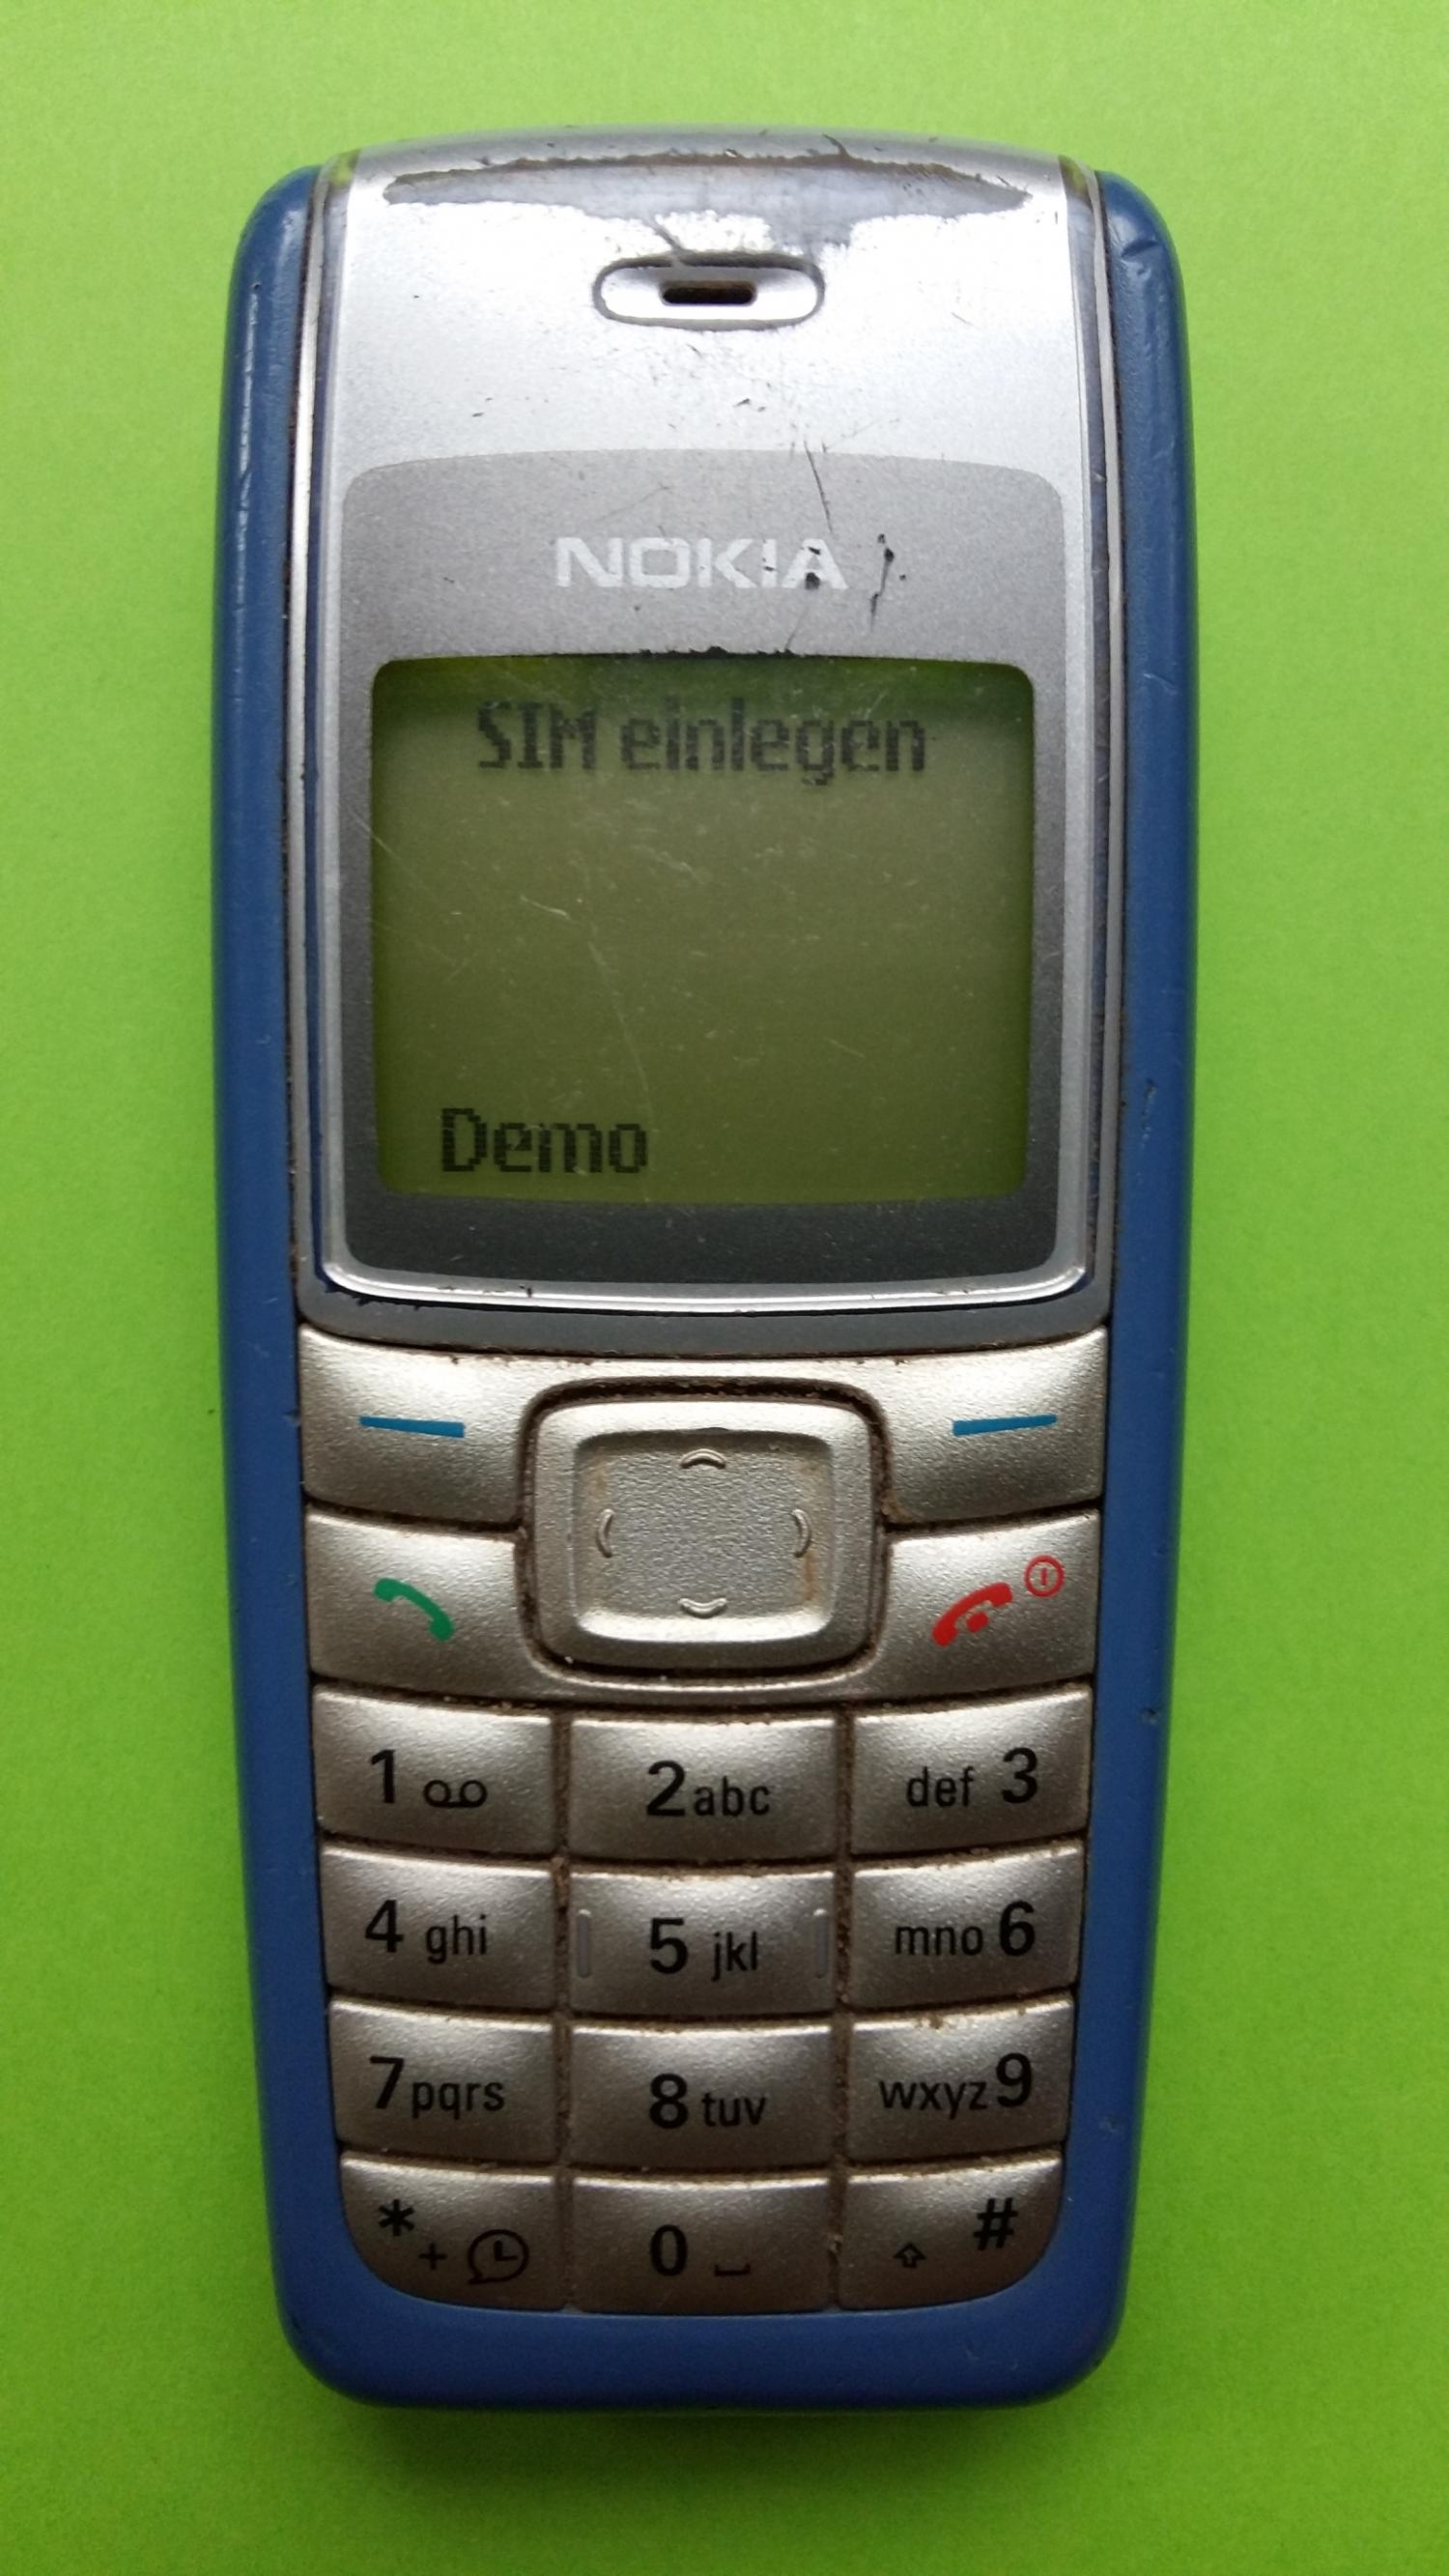 image-7300369-Nokia 1110i (2)1.jpg